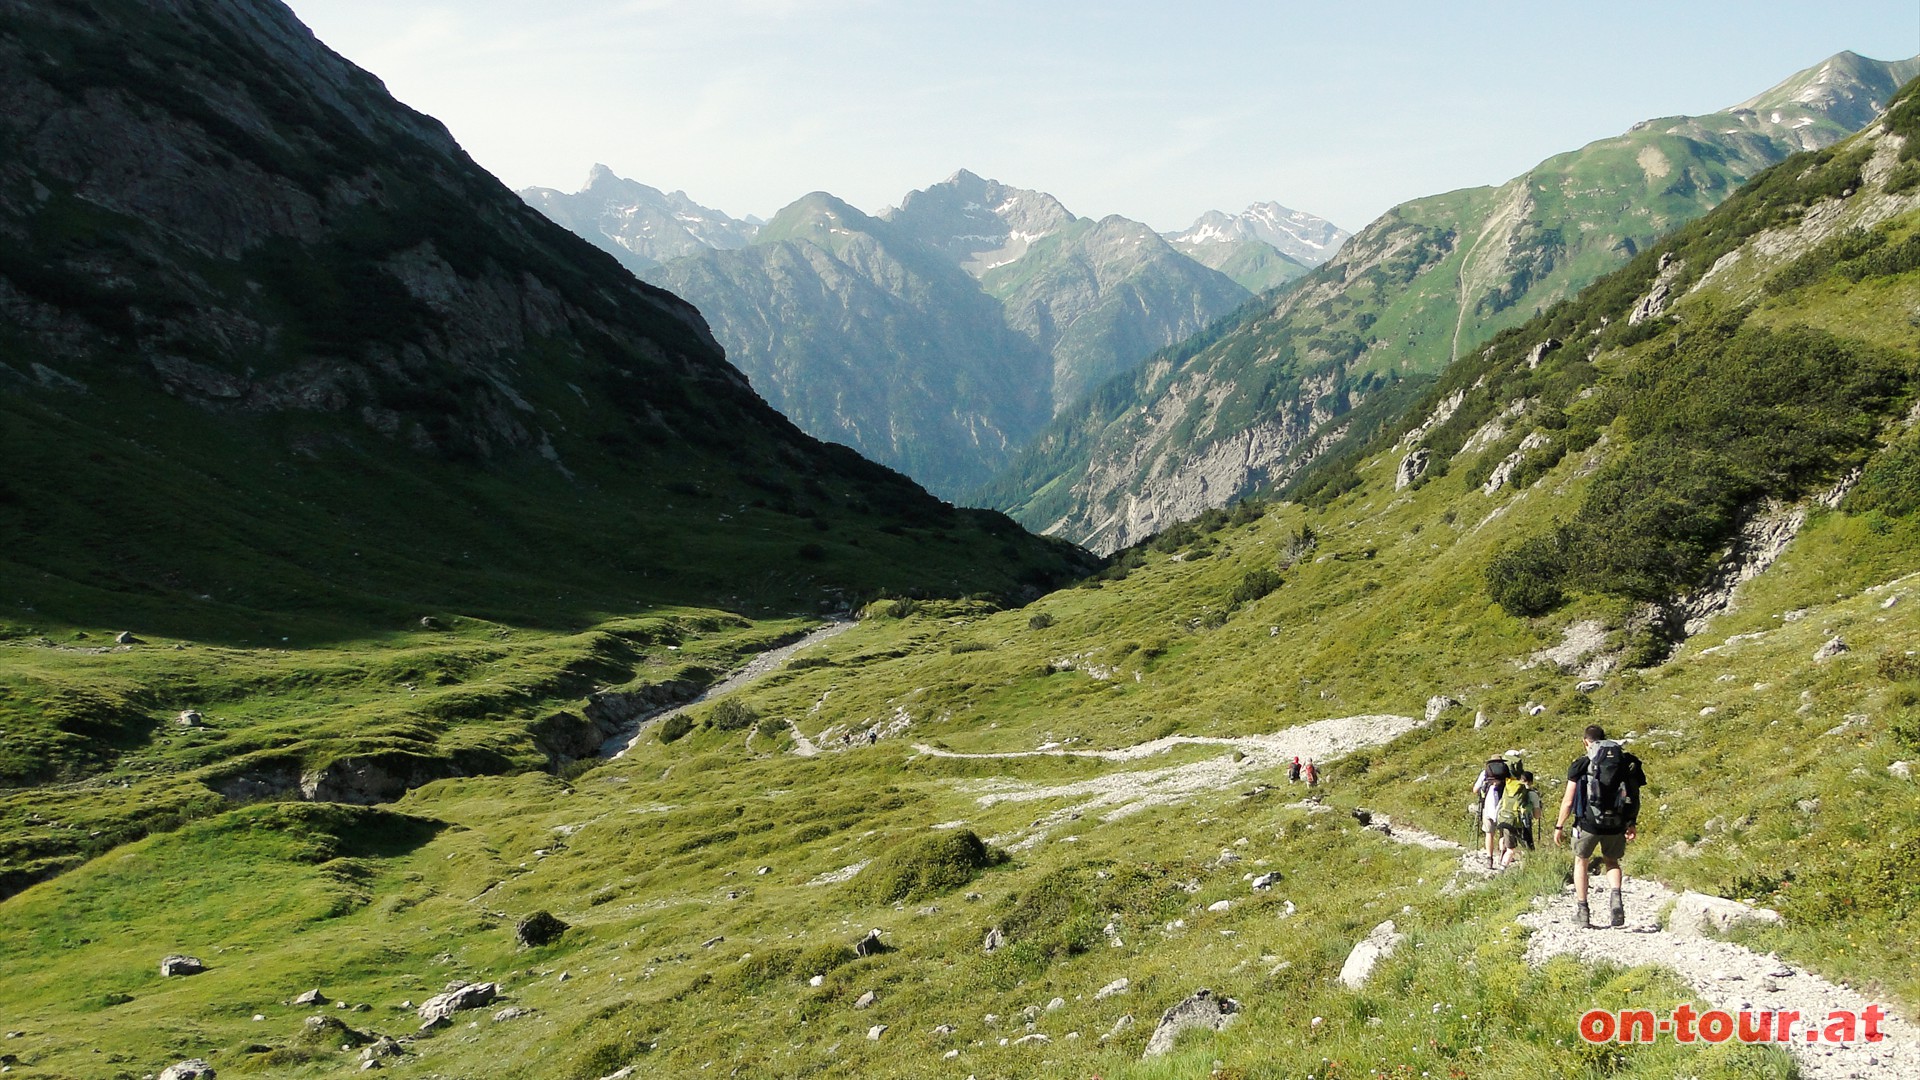 Rckblick zu den Lechtaler Alpen; links die Wetterspitze, in der Mitte die grasberzogene Peischelspitze, danach die Grietaler Spitze und rechts hinten die Fallesinspitze.